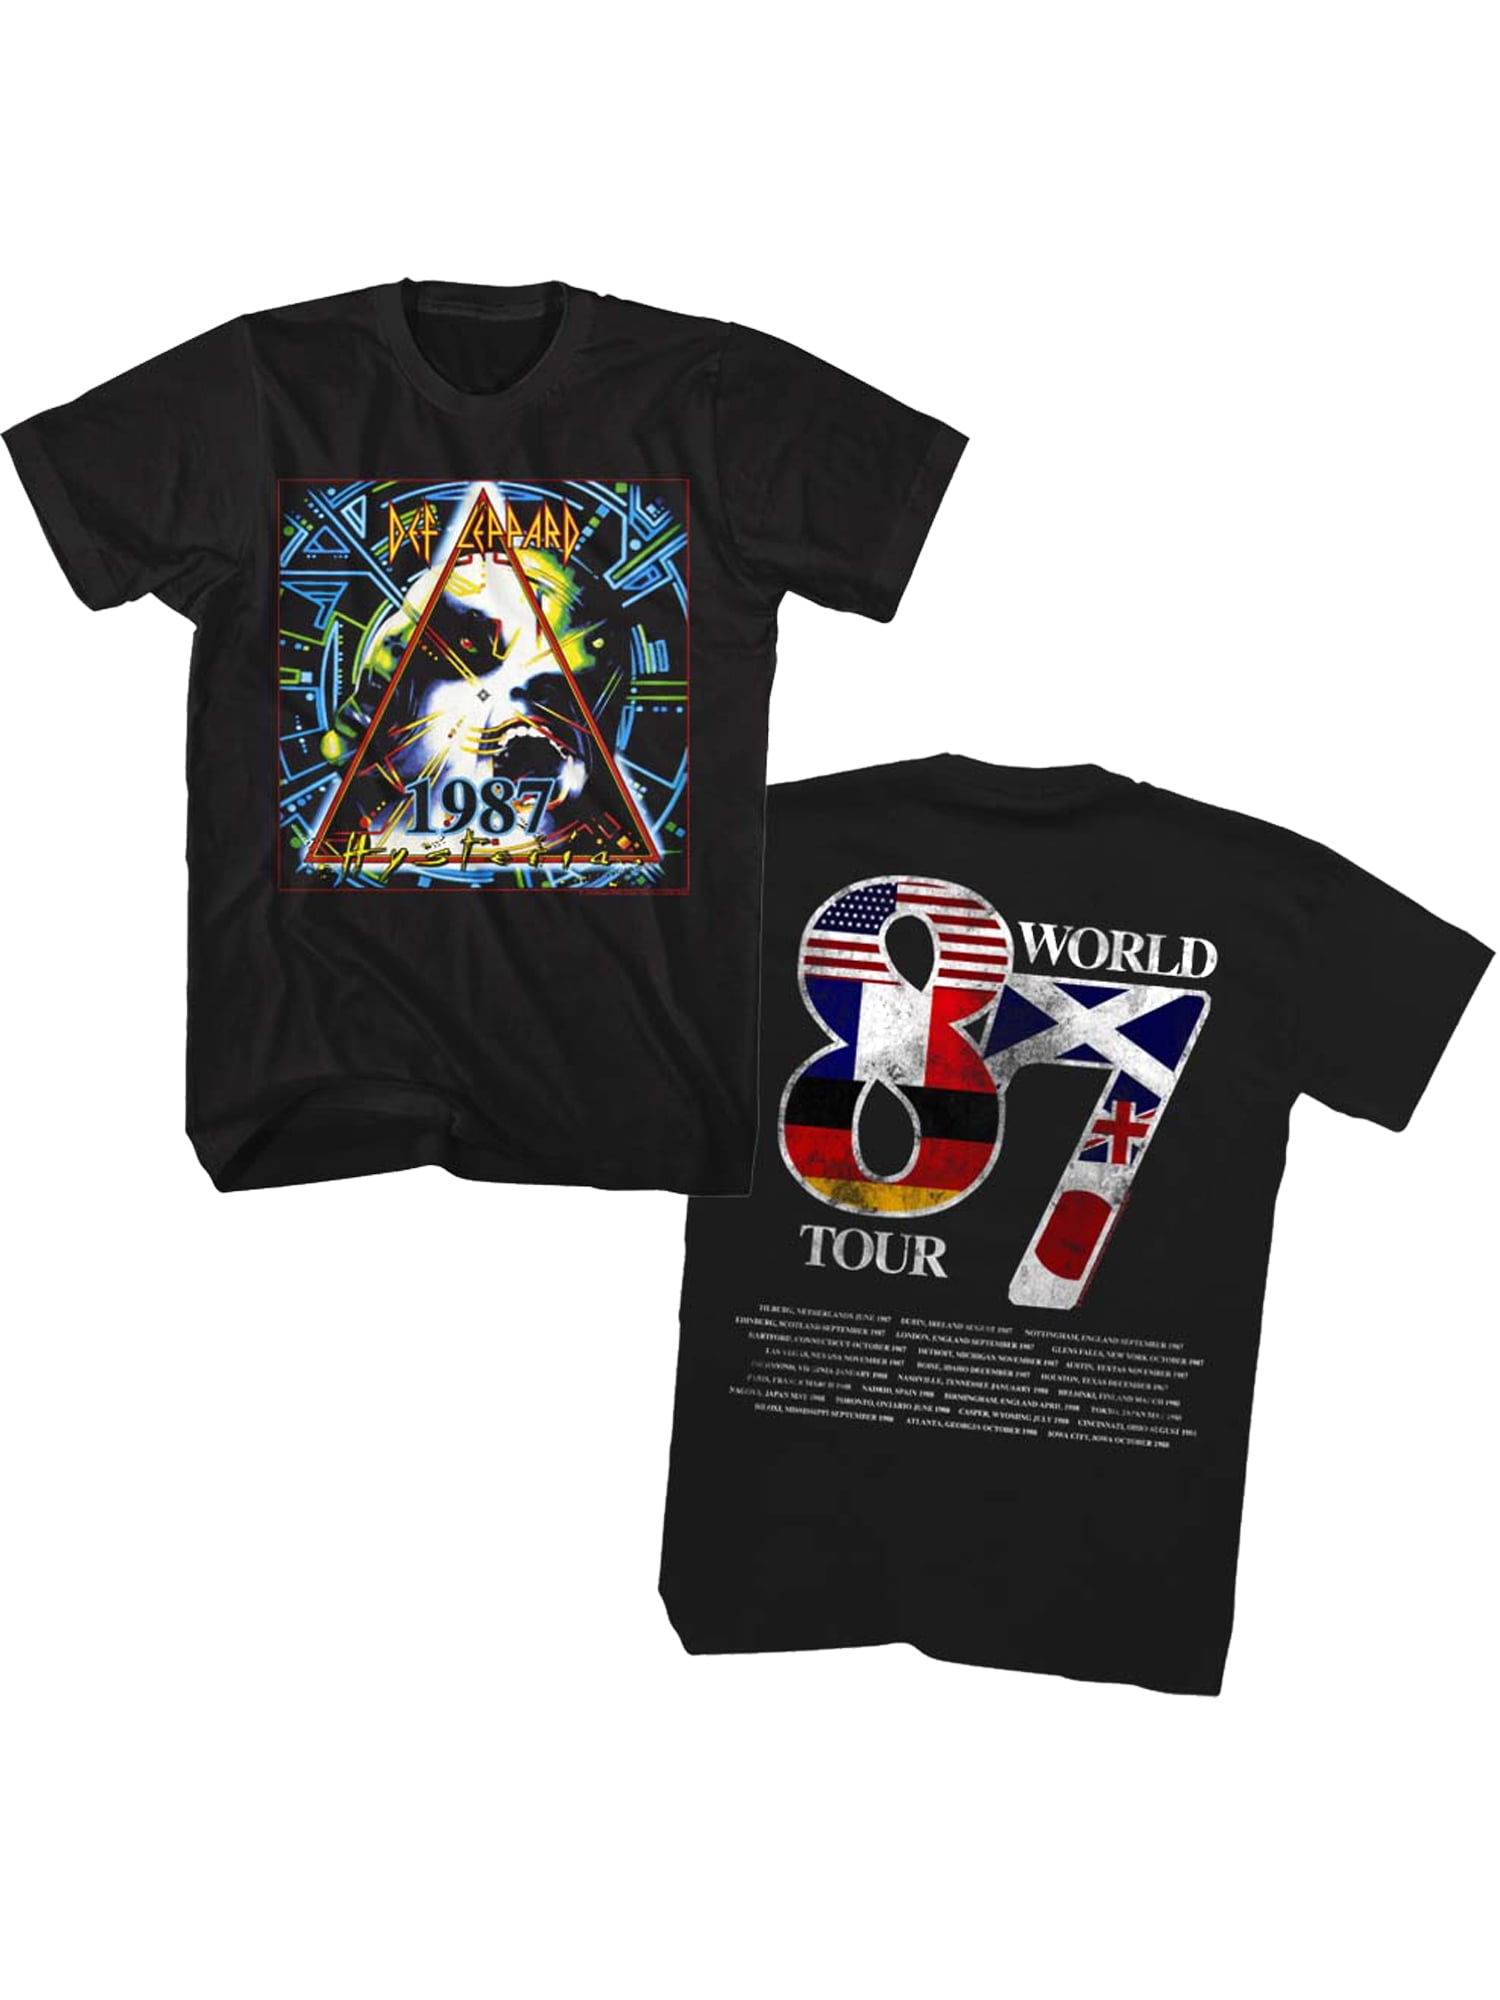 Def Leppard 87 World Tour Tee Shirt 